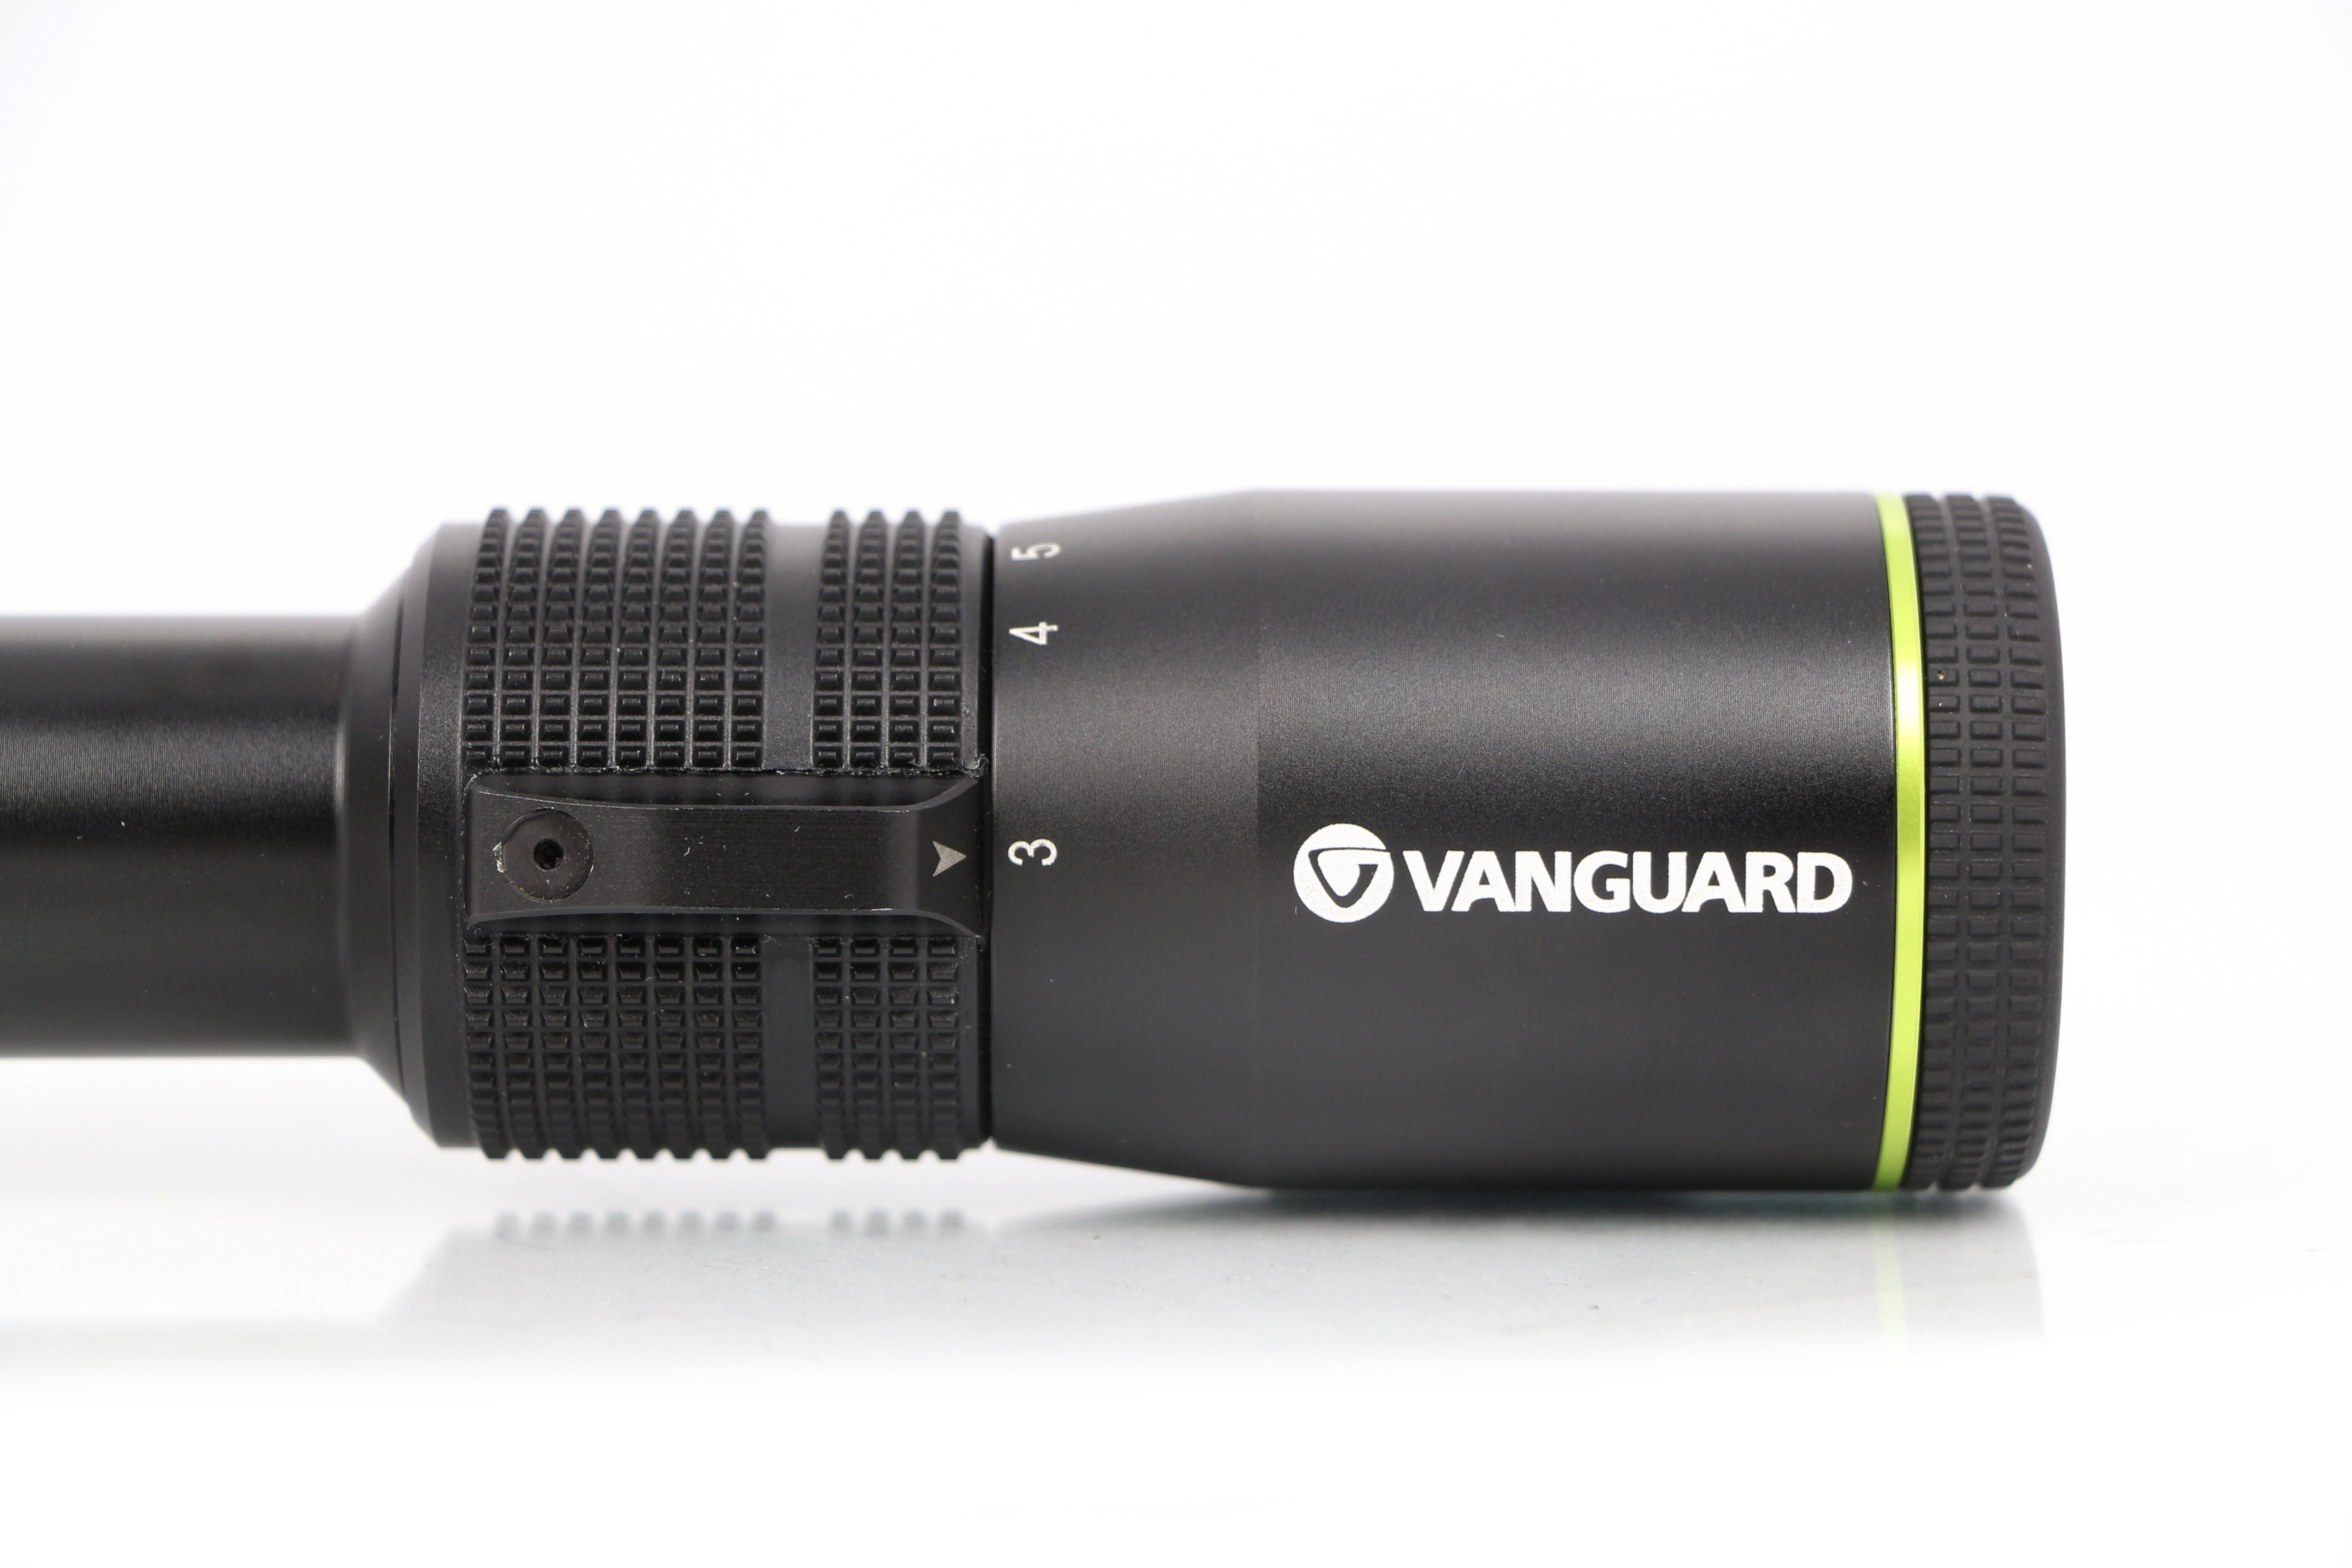 Прицел Vanguard Endeavor RS 3-9x40 D, сетка Duplex купить по оптимальной цене,  доставка по России, гарантия качества